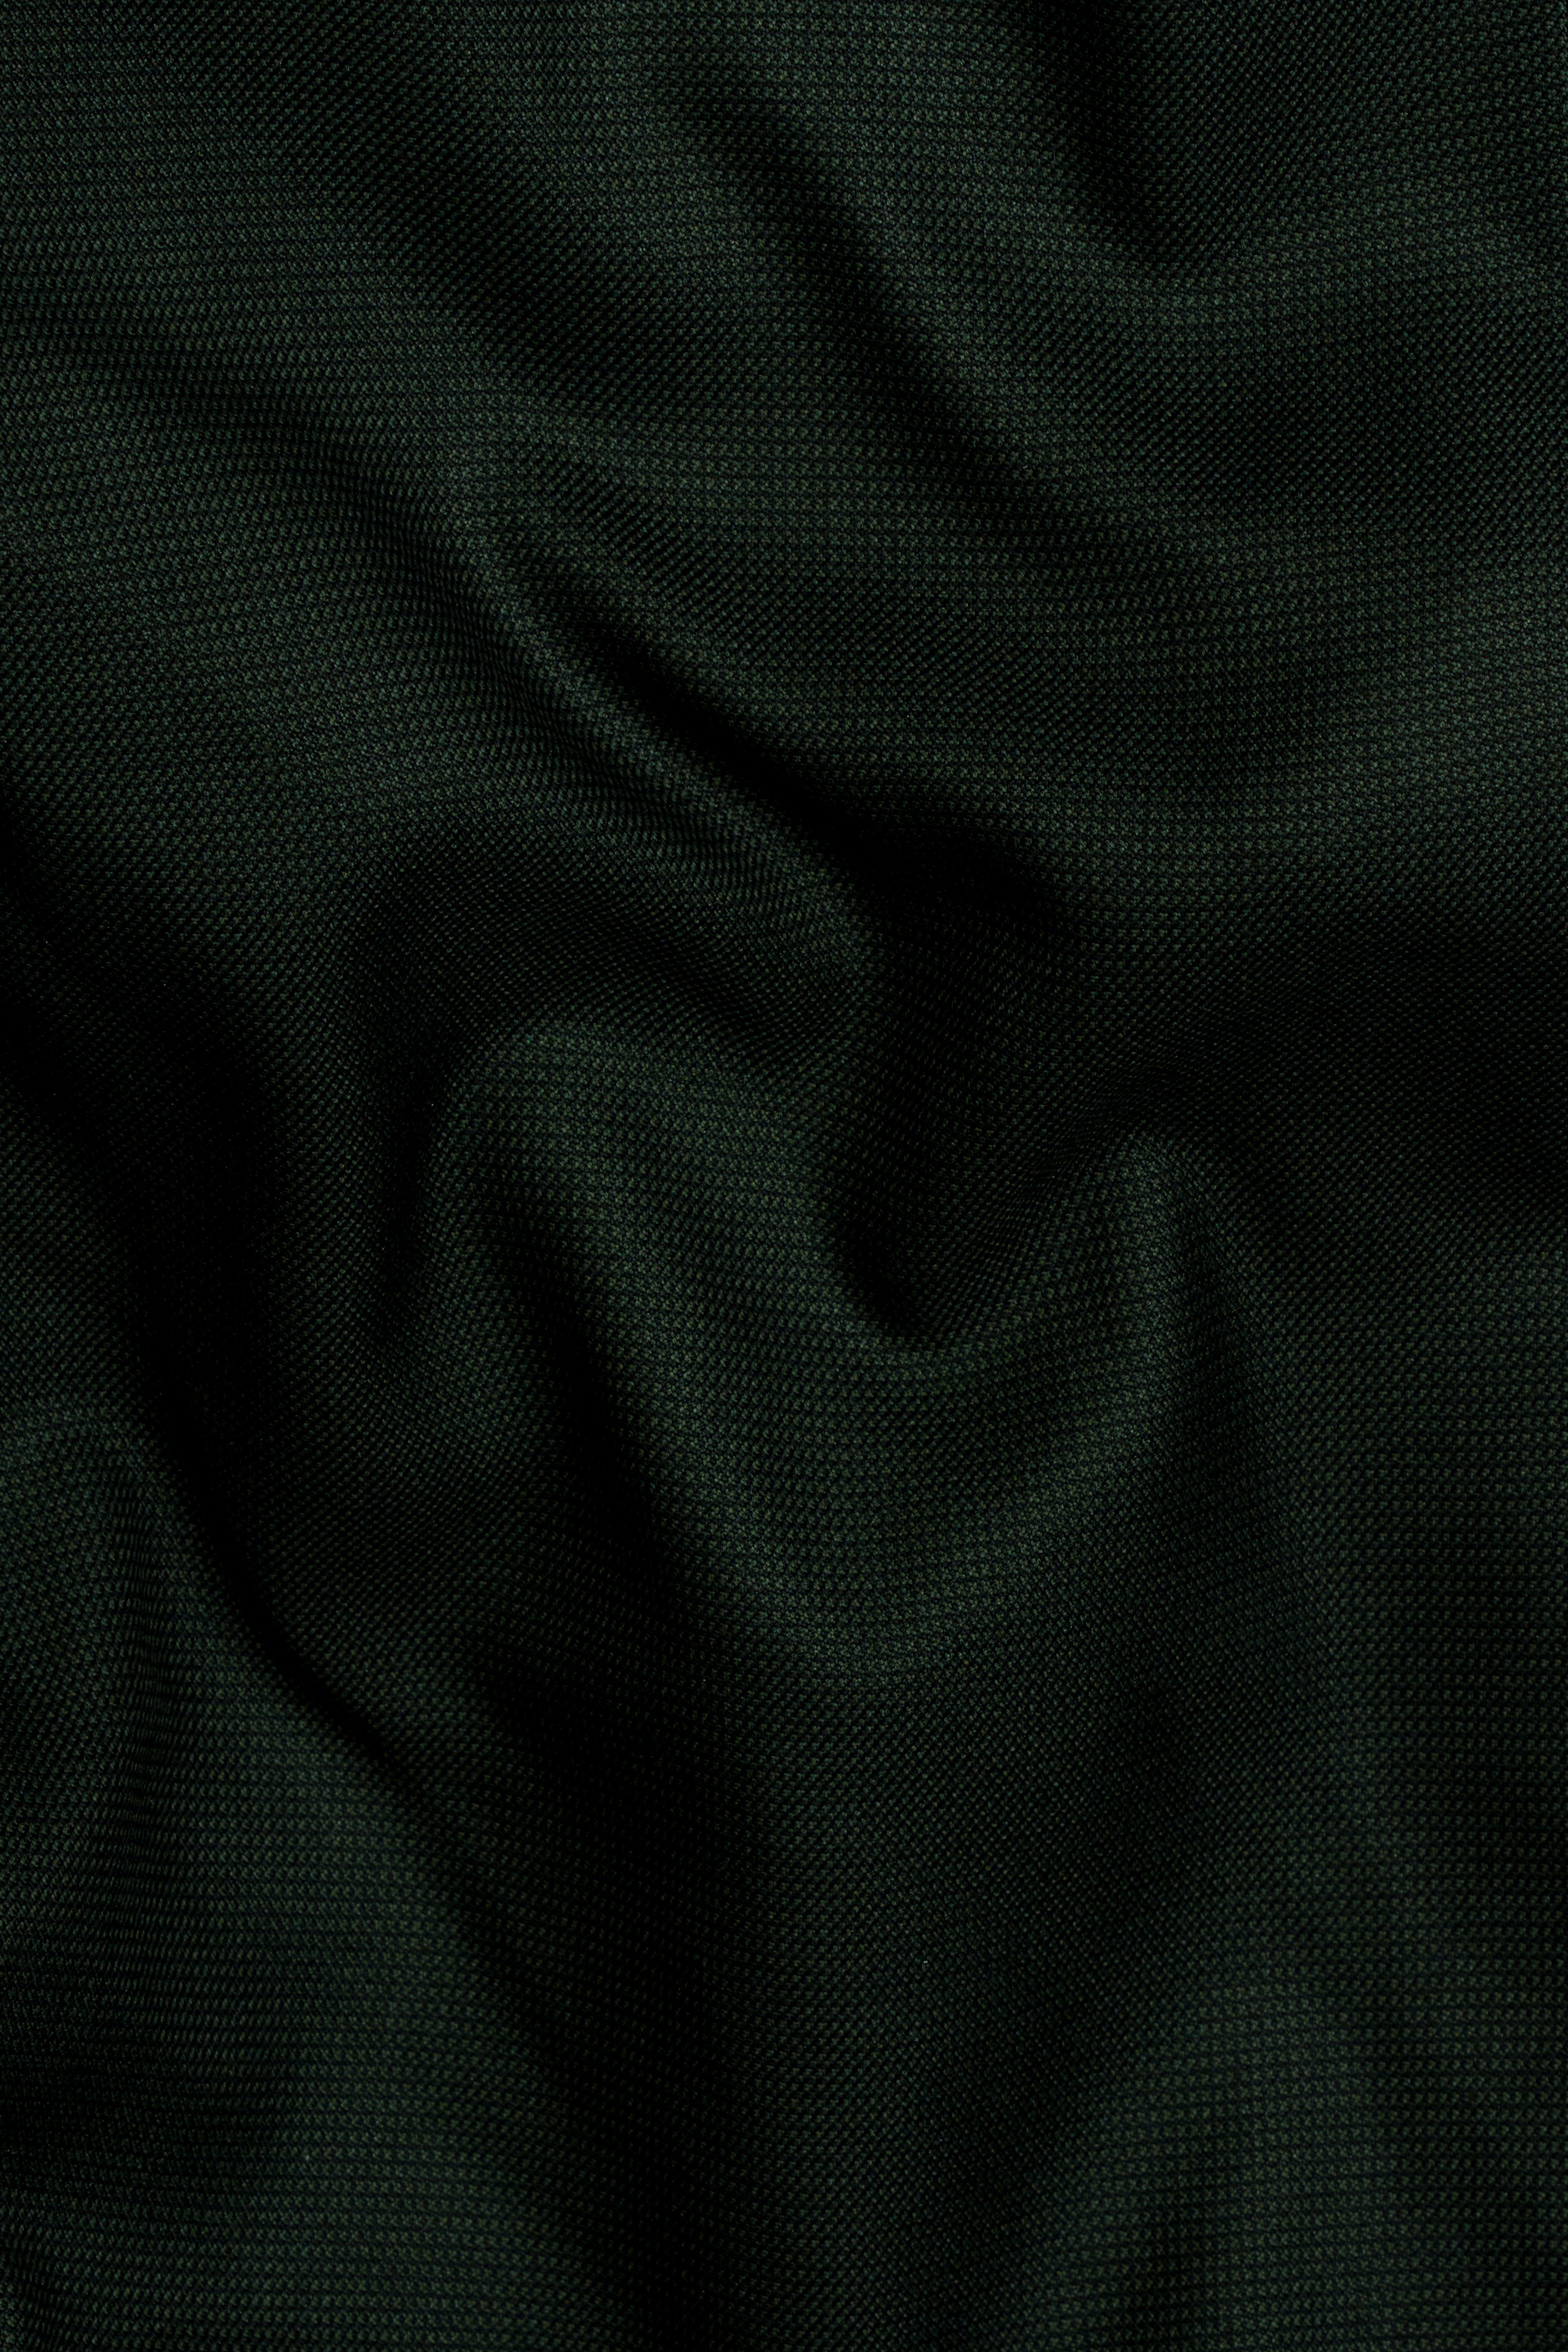 Dartmouth Green Wool Rich Cross Buttoned Bandhgala Designer Suit ST2822-D178-36, ST2822-D178-38, ST2822-D178-40, ST2822-D178-42, ST2822-D178-44, ST2822-D178-46, ST2822-D178-48, ST2822-D178-50, ST2822-D178-52, ST2822-D178-54, ST2822-D178-56, ST2822-D178-58, ST2822-D178-60